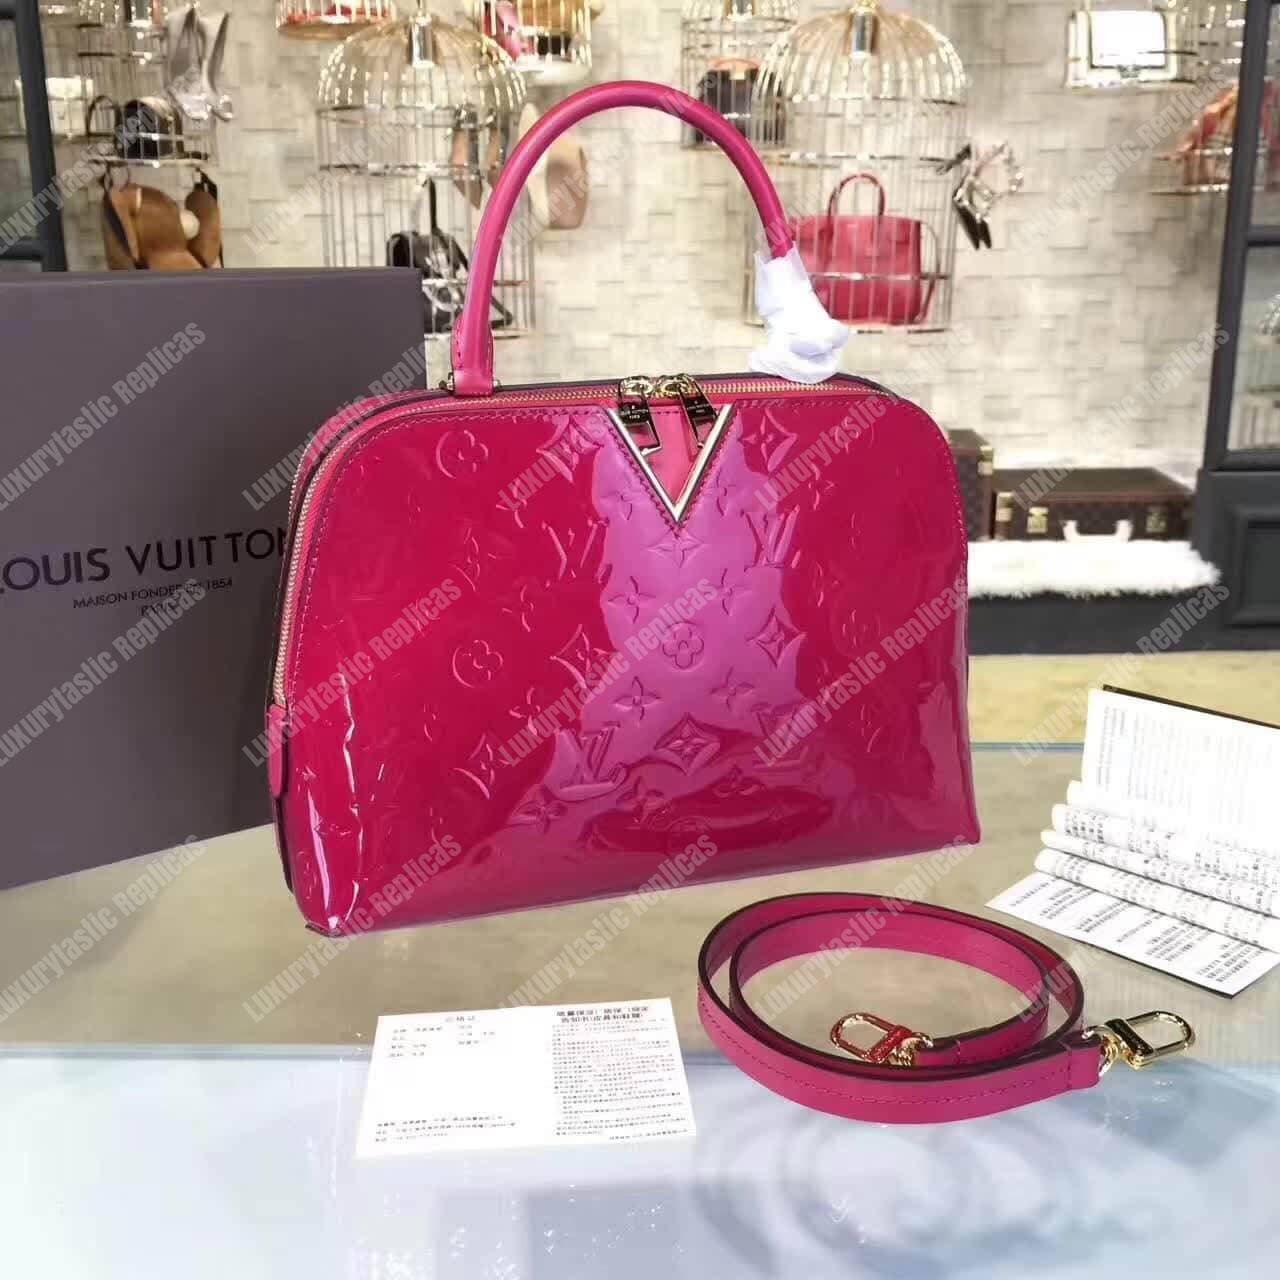 Louis Vuitton Melrose Monogram Vernis Hot Pink - Bags Valley